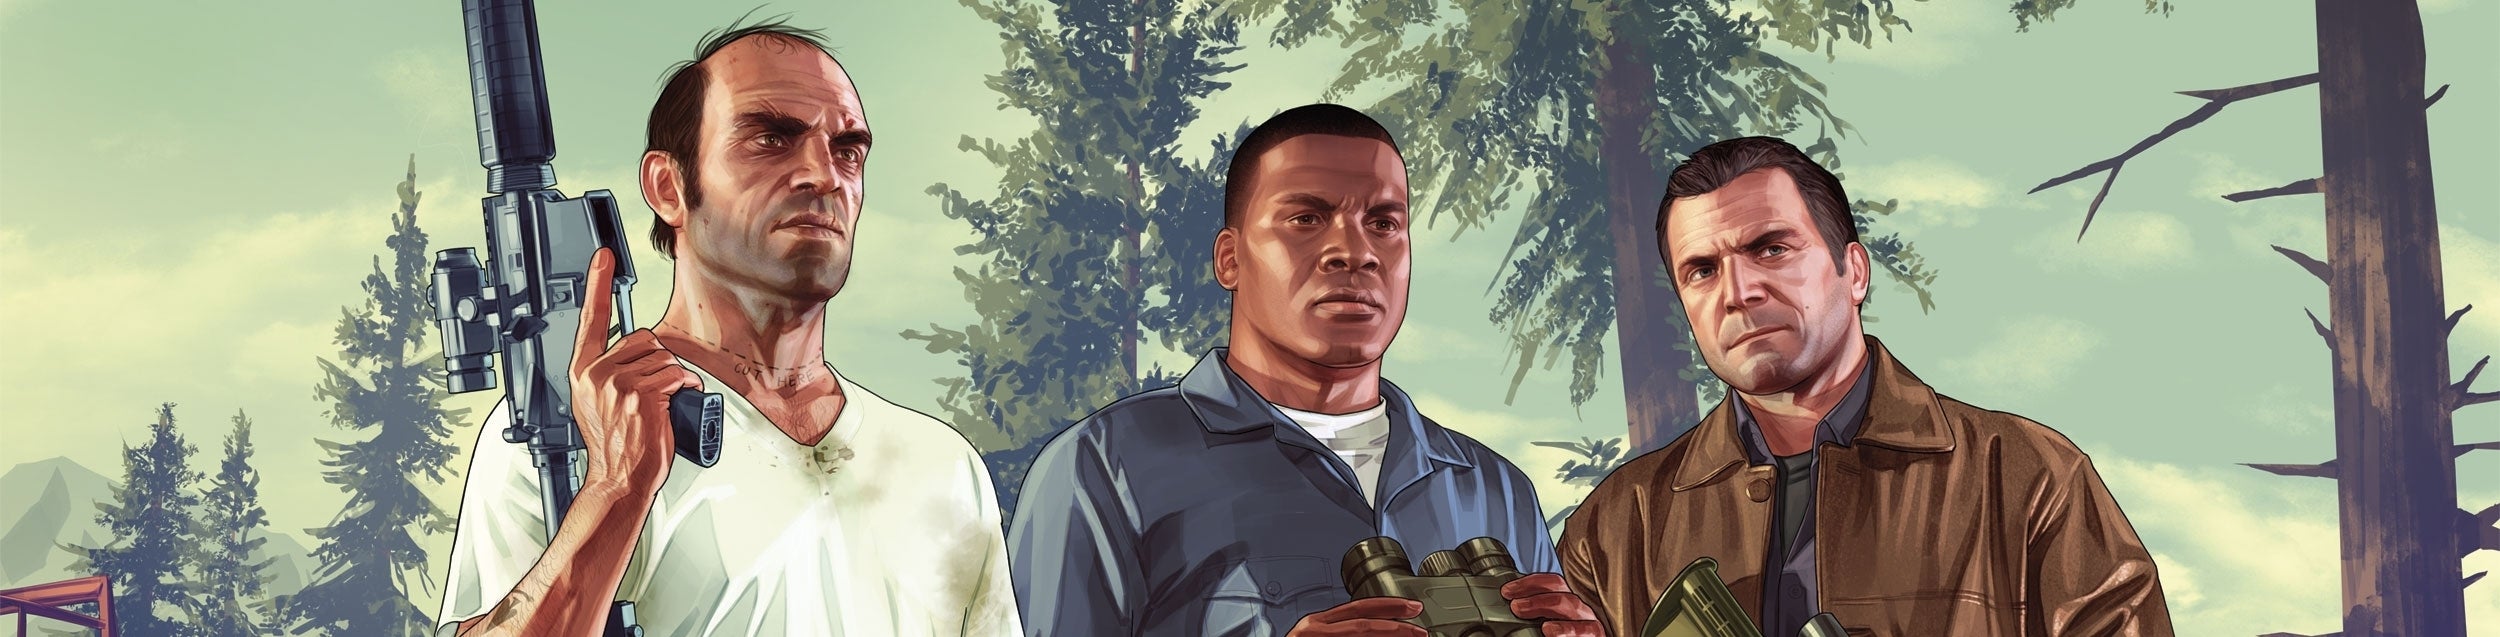 Imagen para Análisis de Grand Theft Auto 5